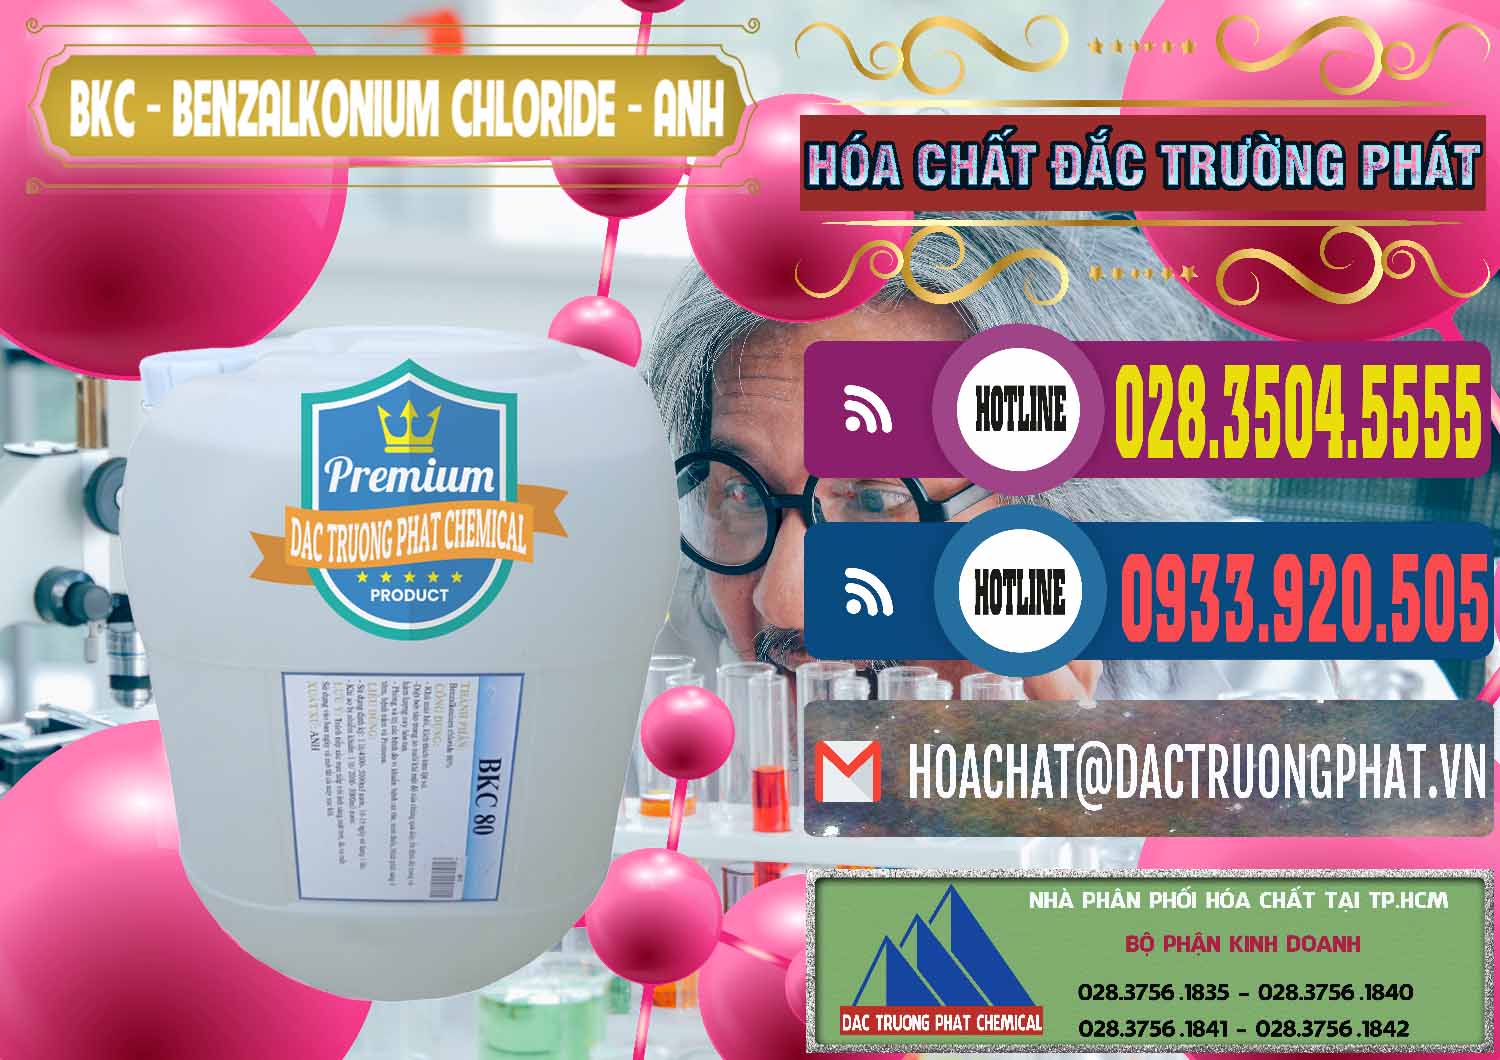 Đơn vị nhập khẩu và bán BKC - Benzalkonium Chloride Anh Quốc Uk Kingdoms - 0415 - Nhà phân phối & cung ứng hóa chất tại TP.HCM - muabanhoachat.com.vn